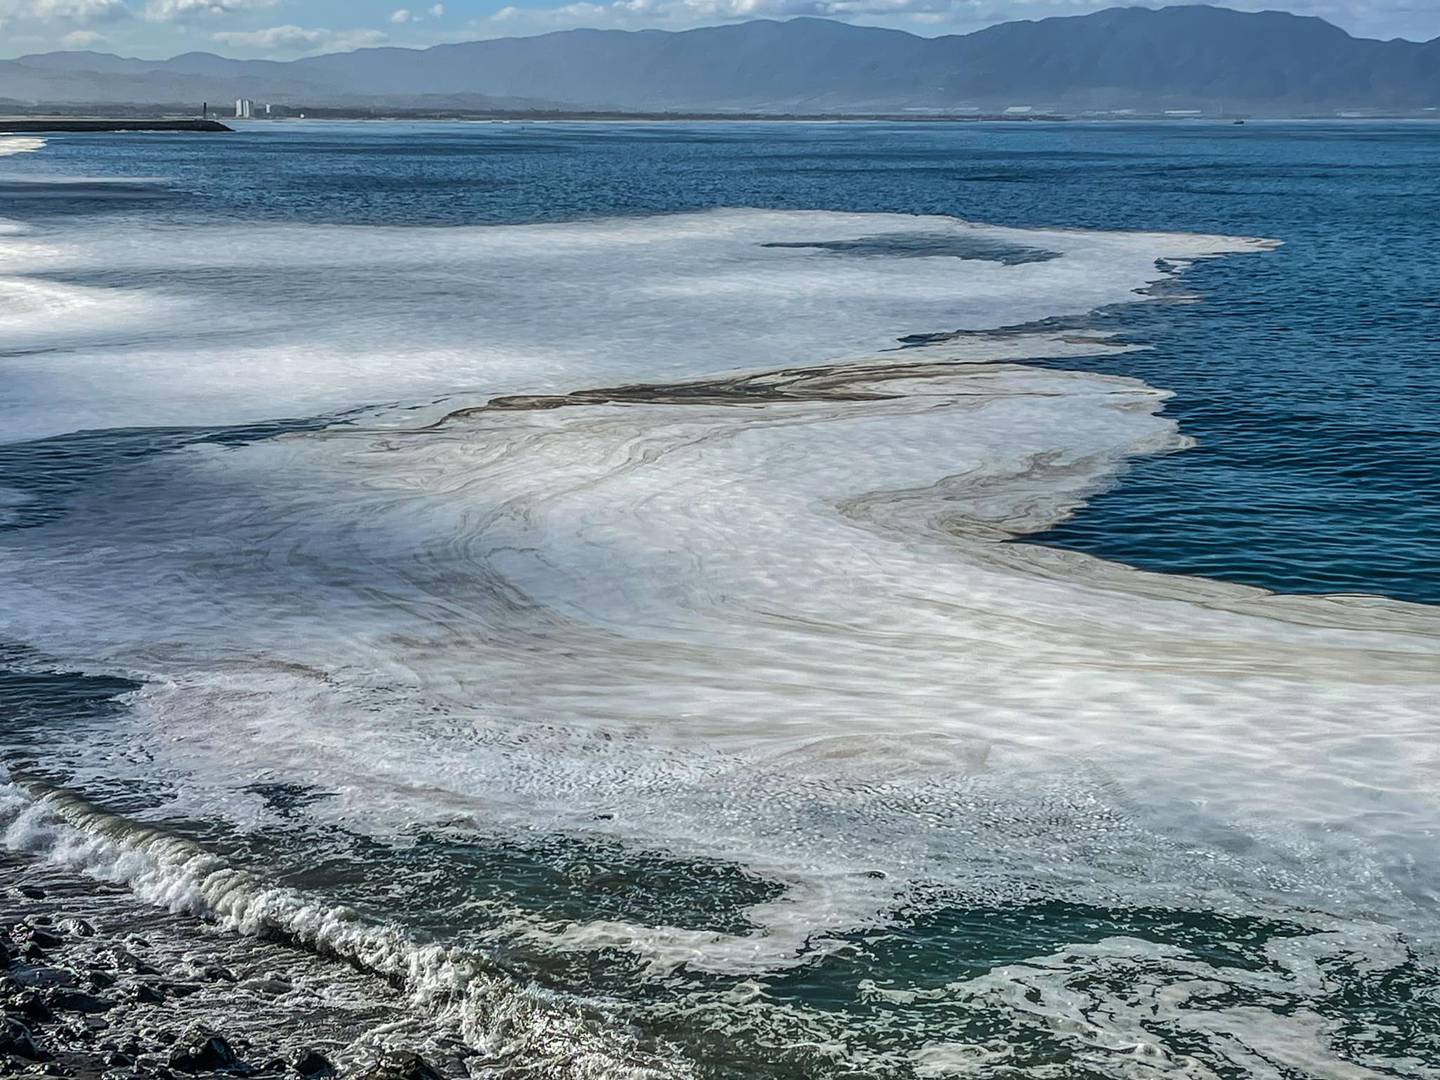 Preocupa agua turbia en el mar de Ensenada